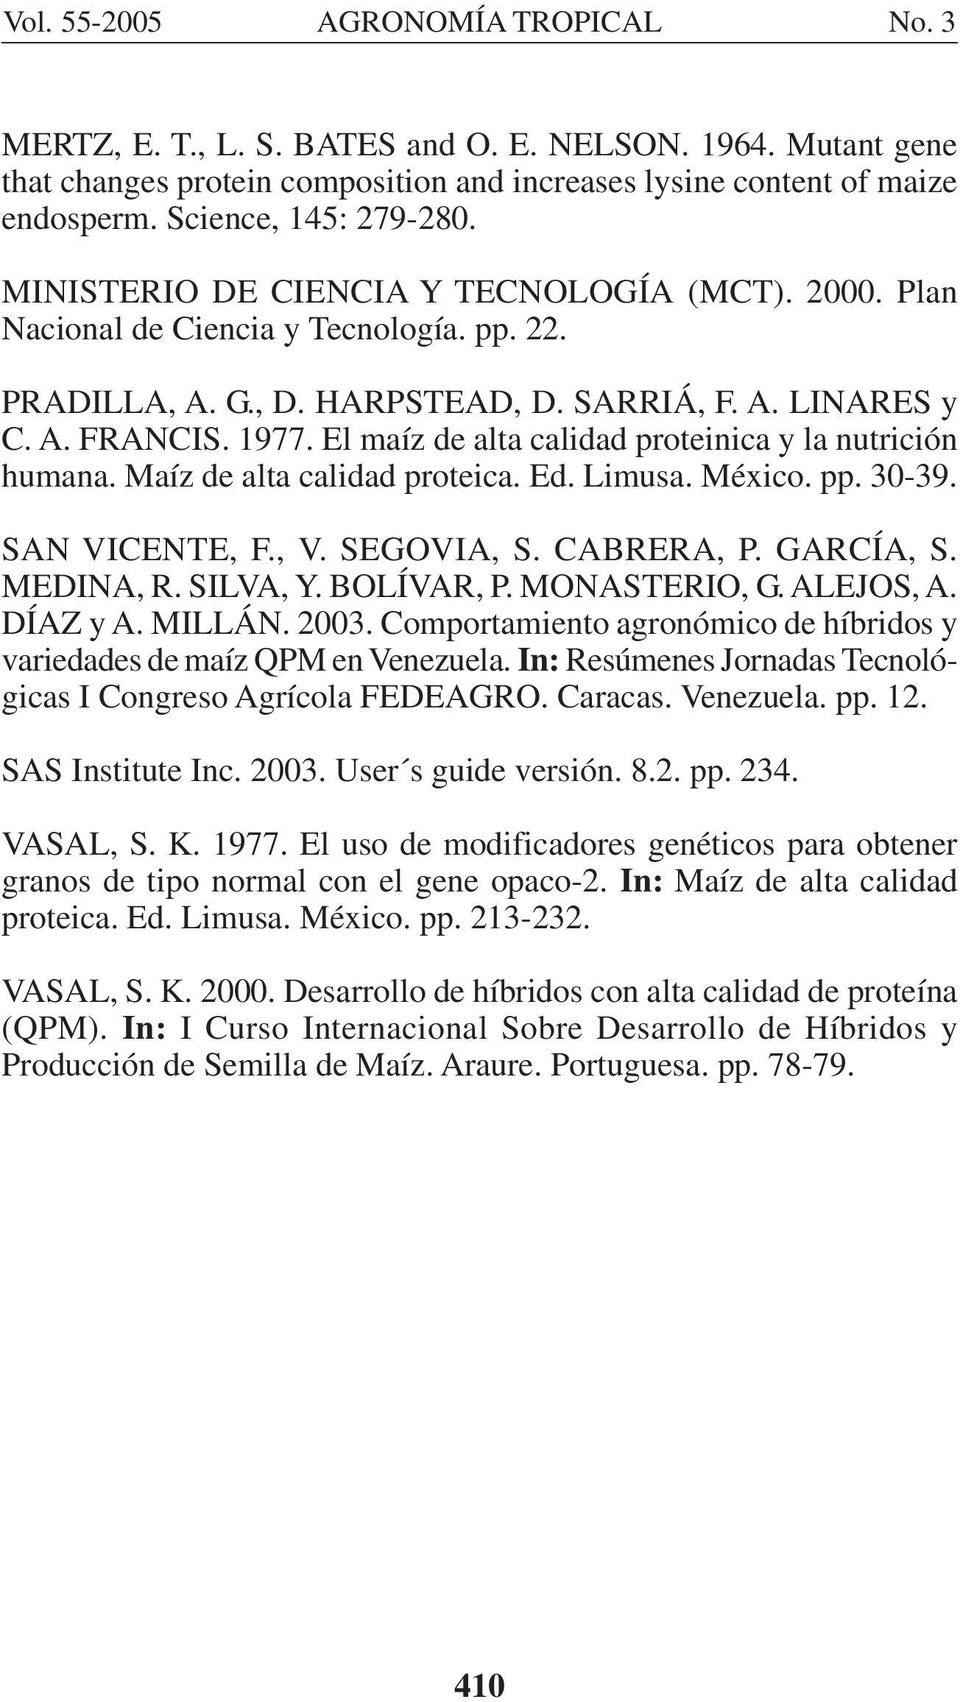 El maíz de alta calidad proteinica y la nutrición humana. Maíz de alta calidad proteica. Ed. Limusa. México. pp. 30-39. SAN VICENTE, F., V. SEGOVIA, S. CABRERA, P. GARCÍA, S. MEDINA, R. SILVA, Y.